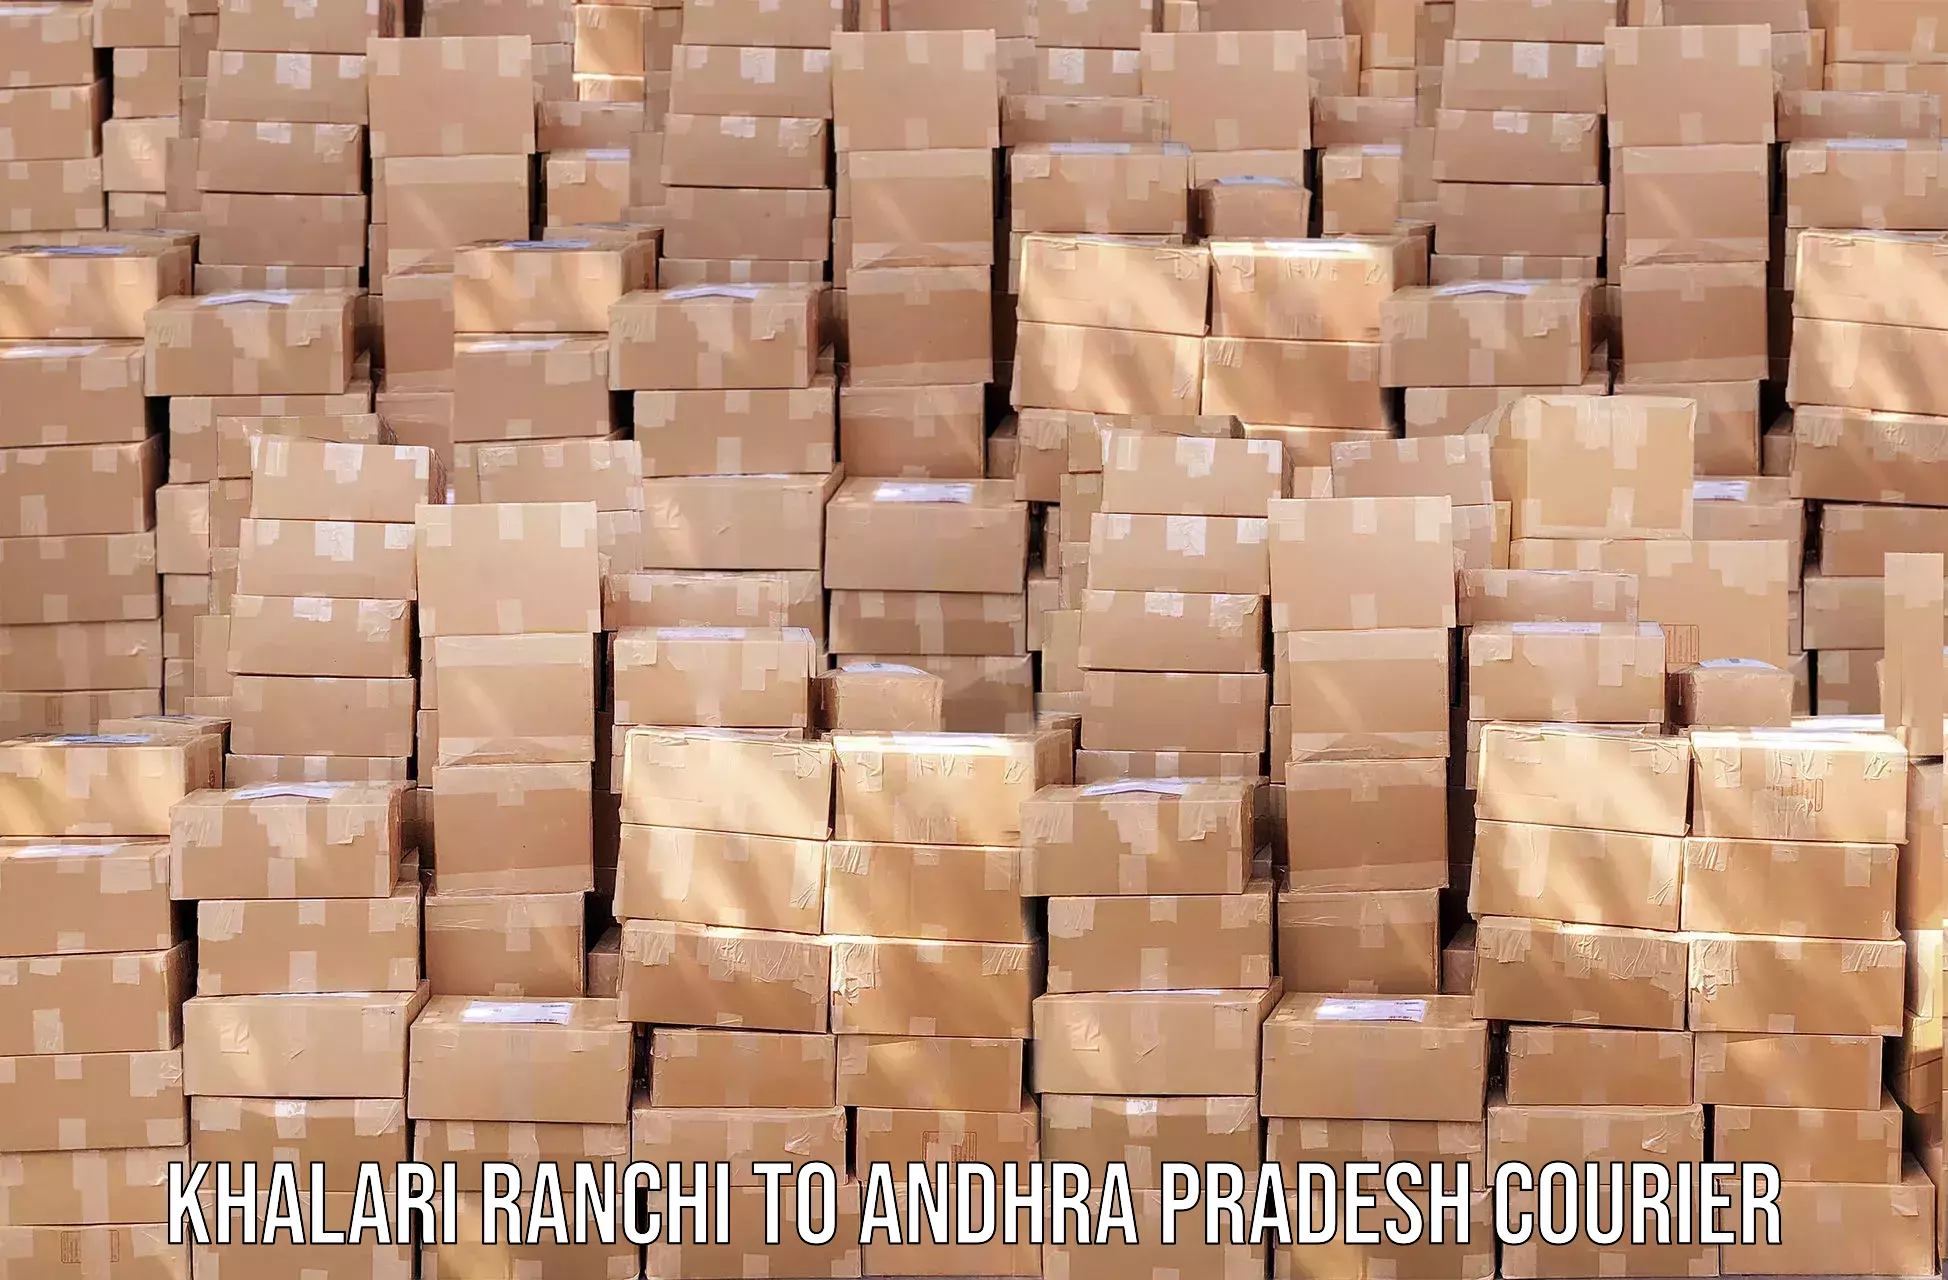 Efficient logistics management Khalari Ranchi to Andhra Pradesh